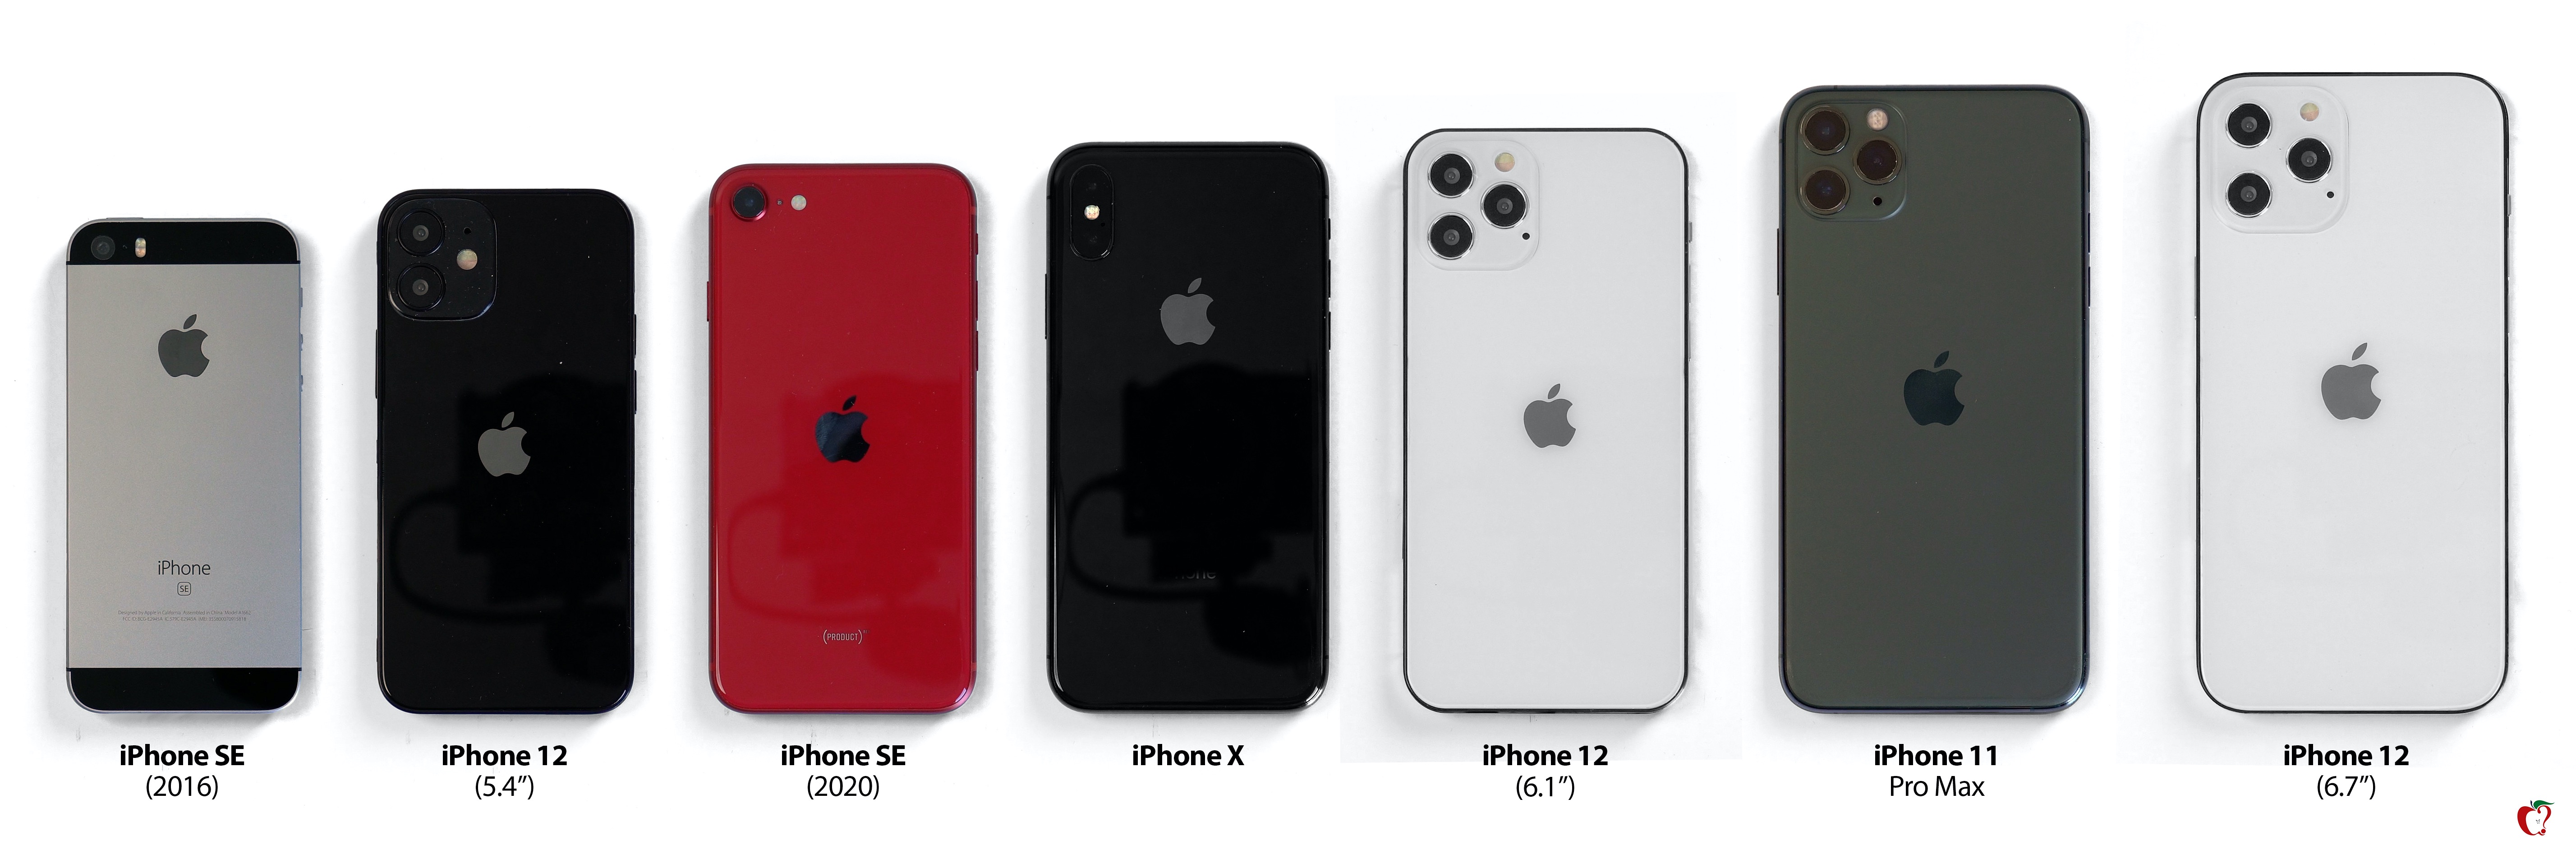 iPhone 12、歴代iPhoneとのサイズ比較画像が登場